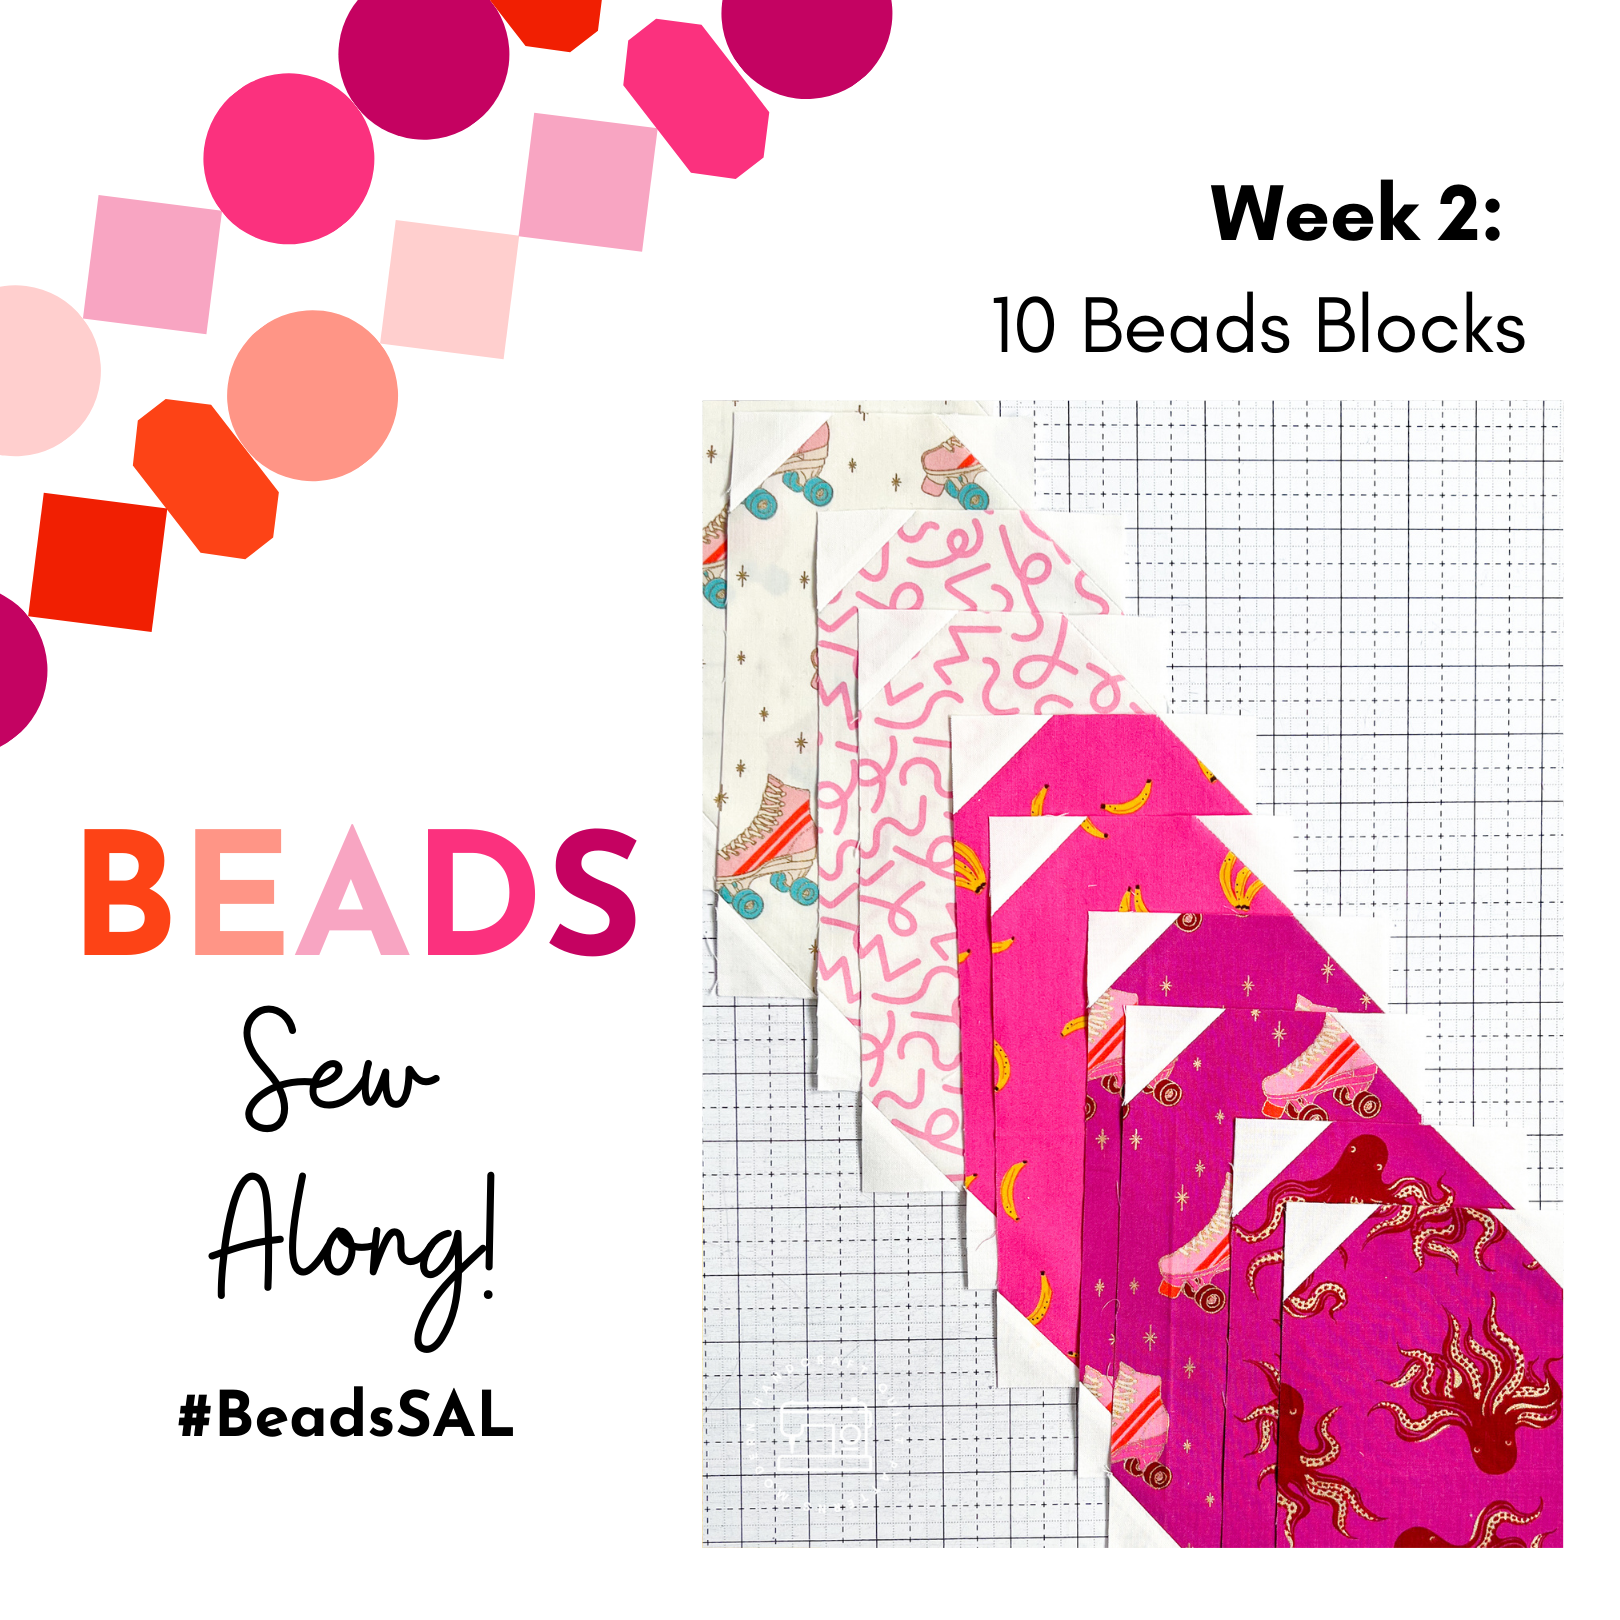 Beads Quilt Sew Along Week 2, Modernhandcraft.com